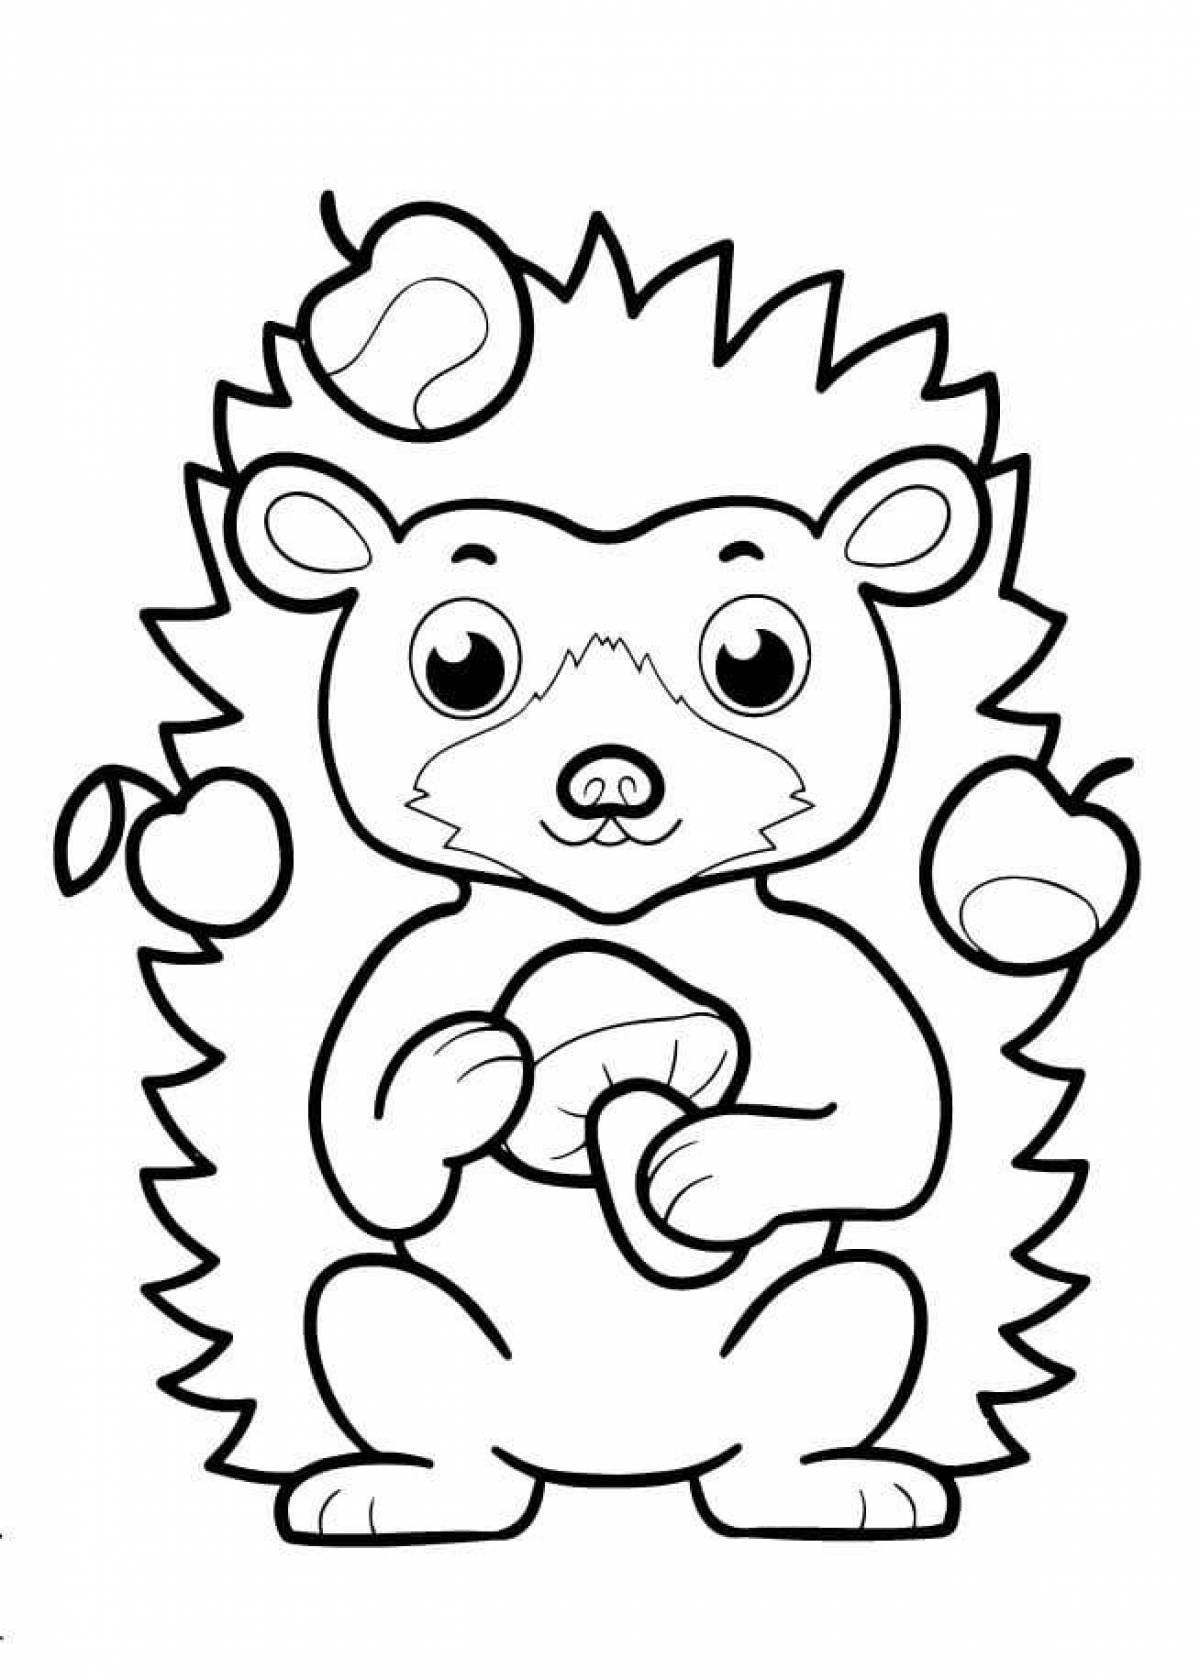 Playful hedgehog coloring book for kids